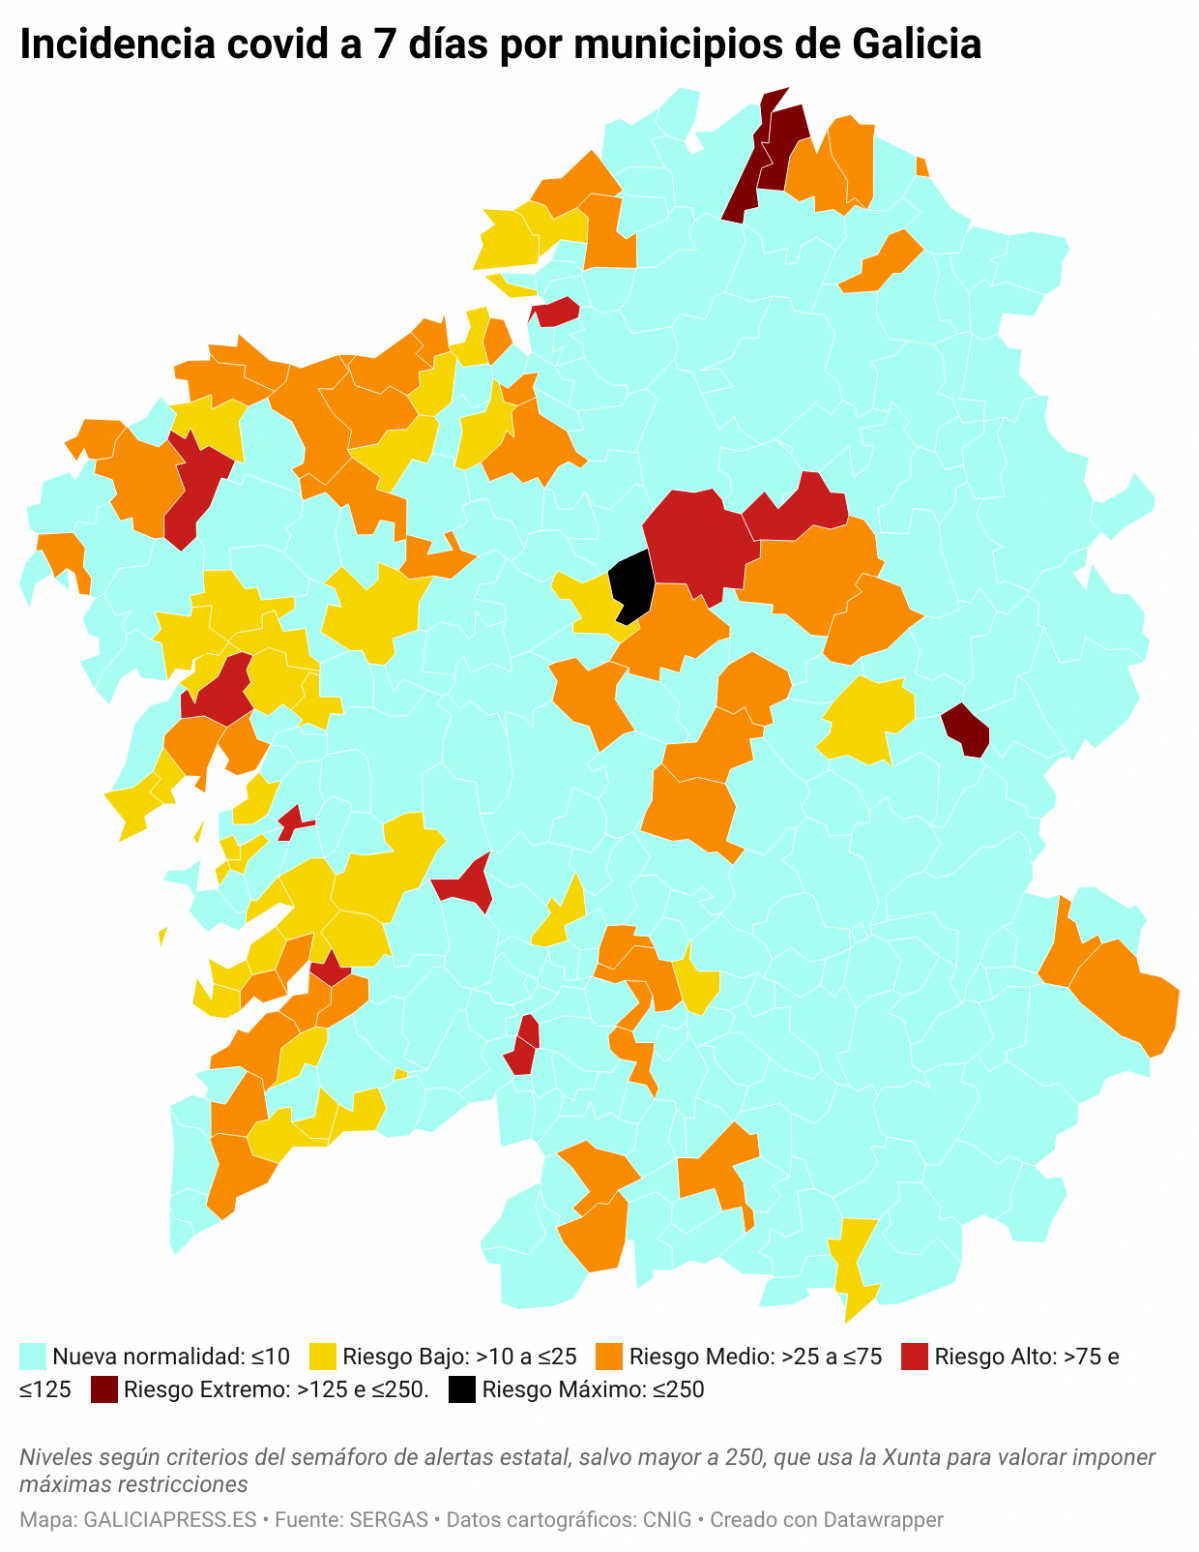 TJrUv incidencia covid a 7 d as por municipios de galicia